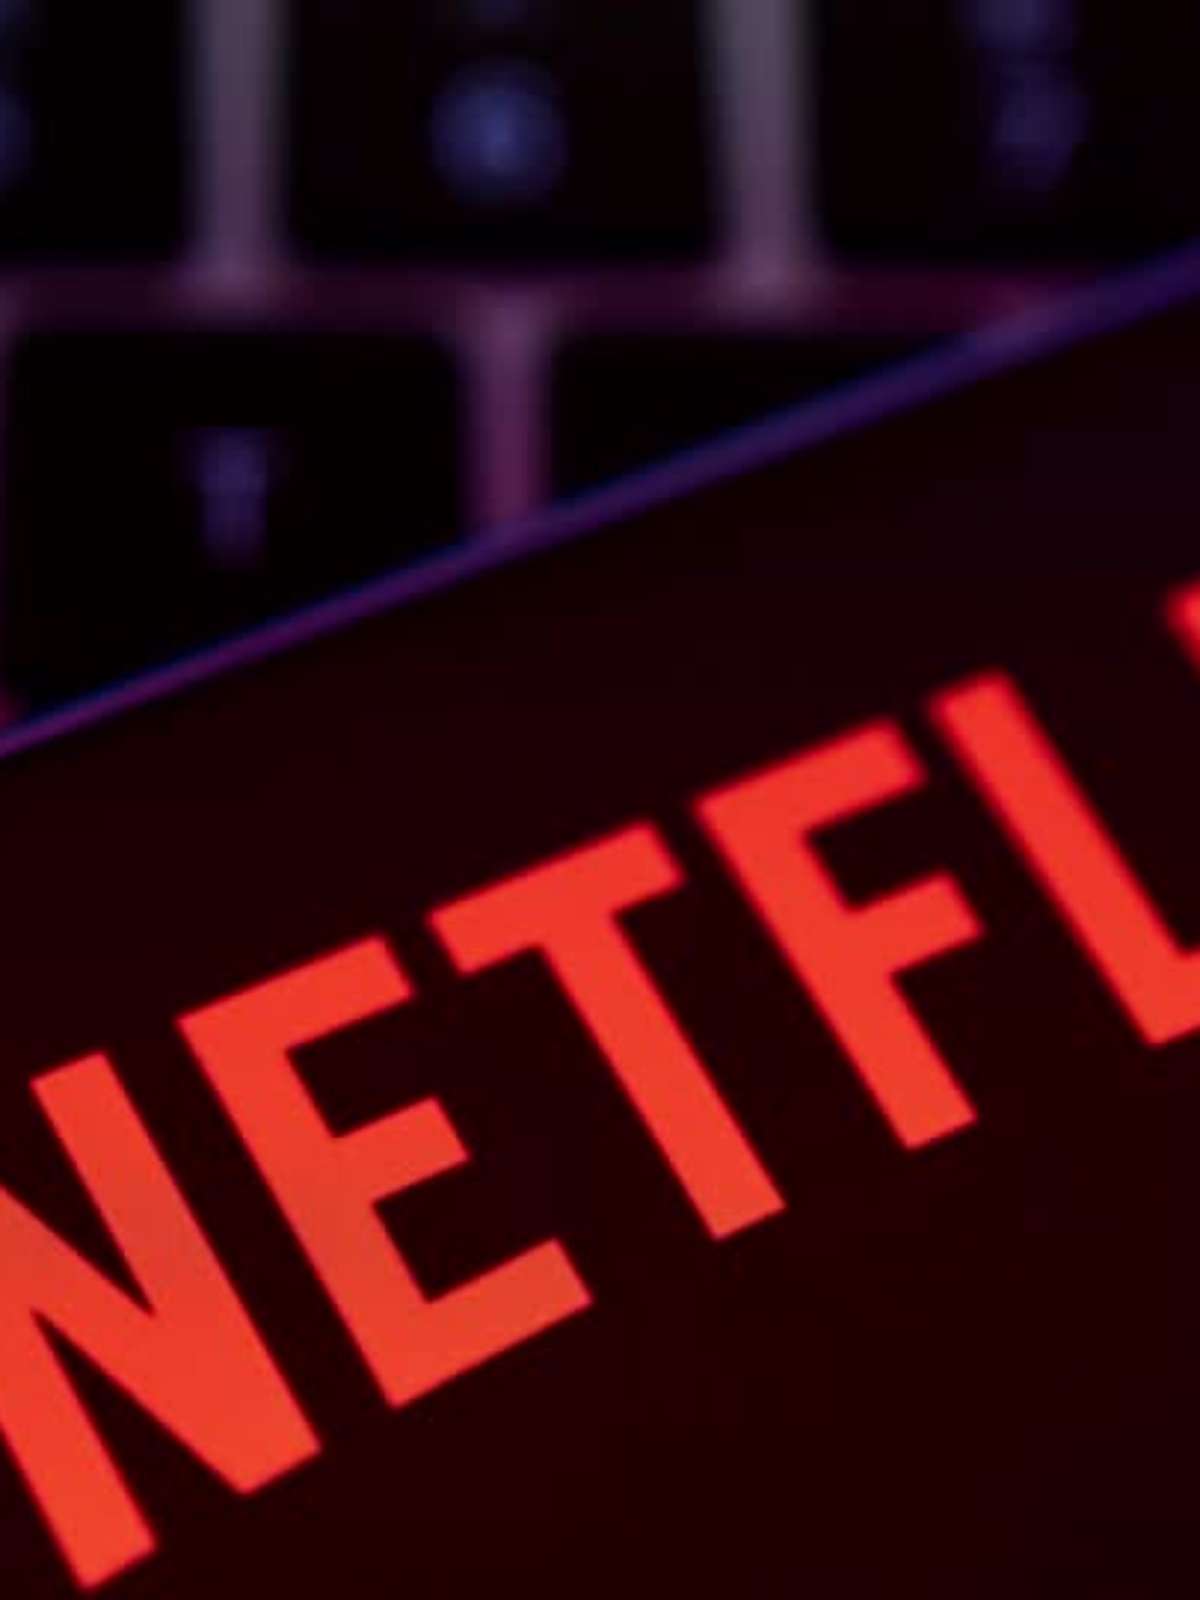 Cobrança extra da Netflix: quais as implicações jurídicas e problemas de  segurança?